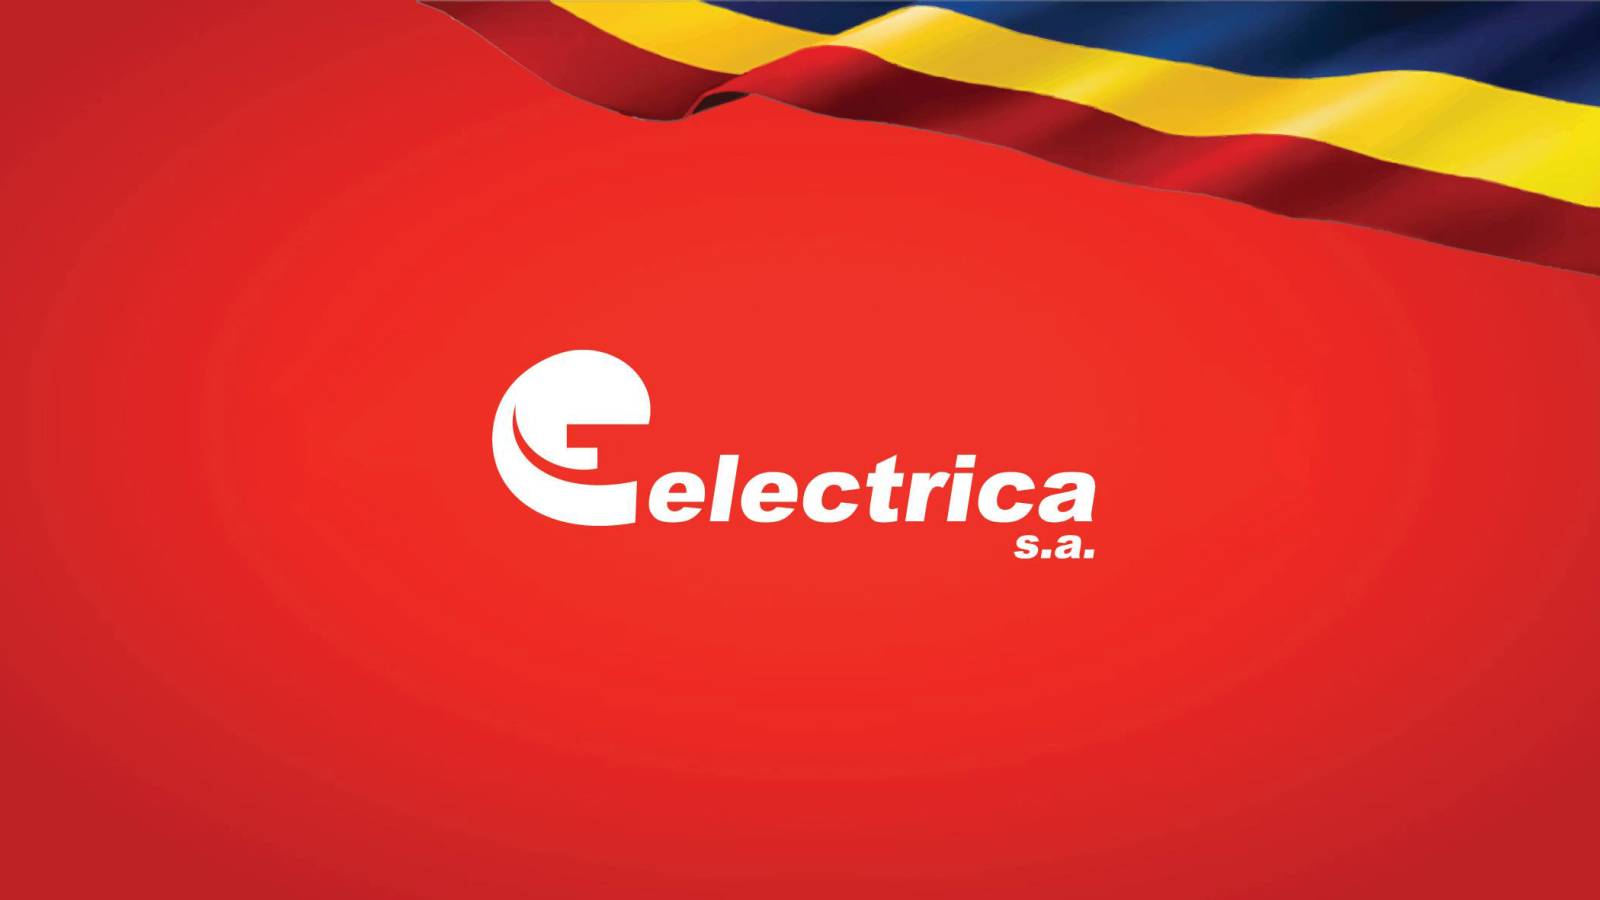 Electrica Tärkeä virallinen ilmoitus LAST MINUTE -päätös Laita hakemus Romanian asiakkaille